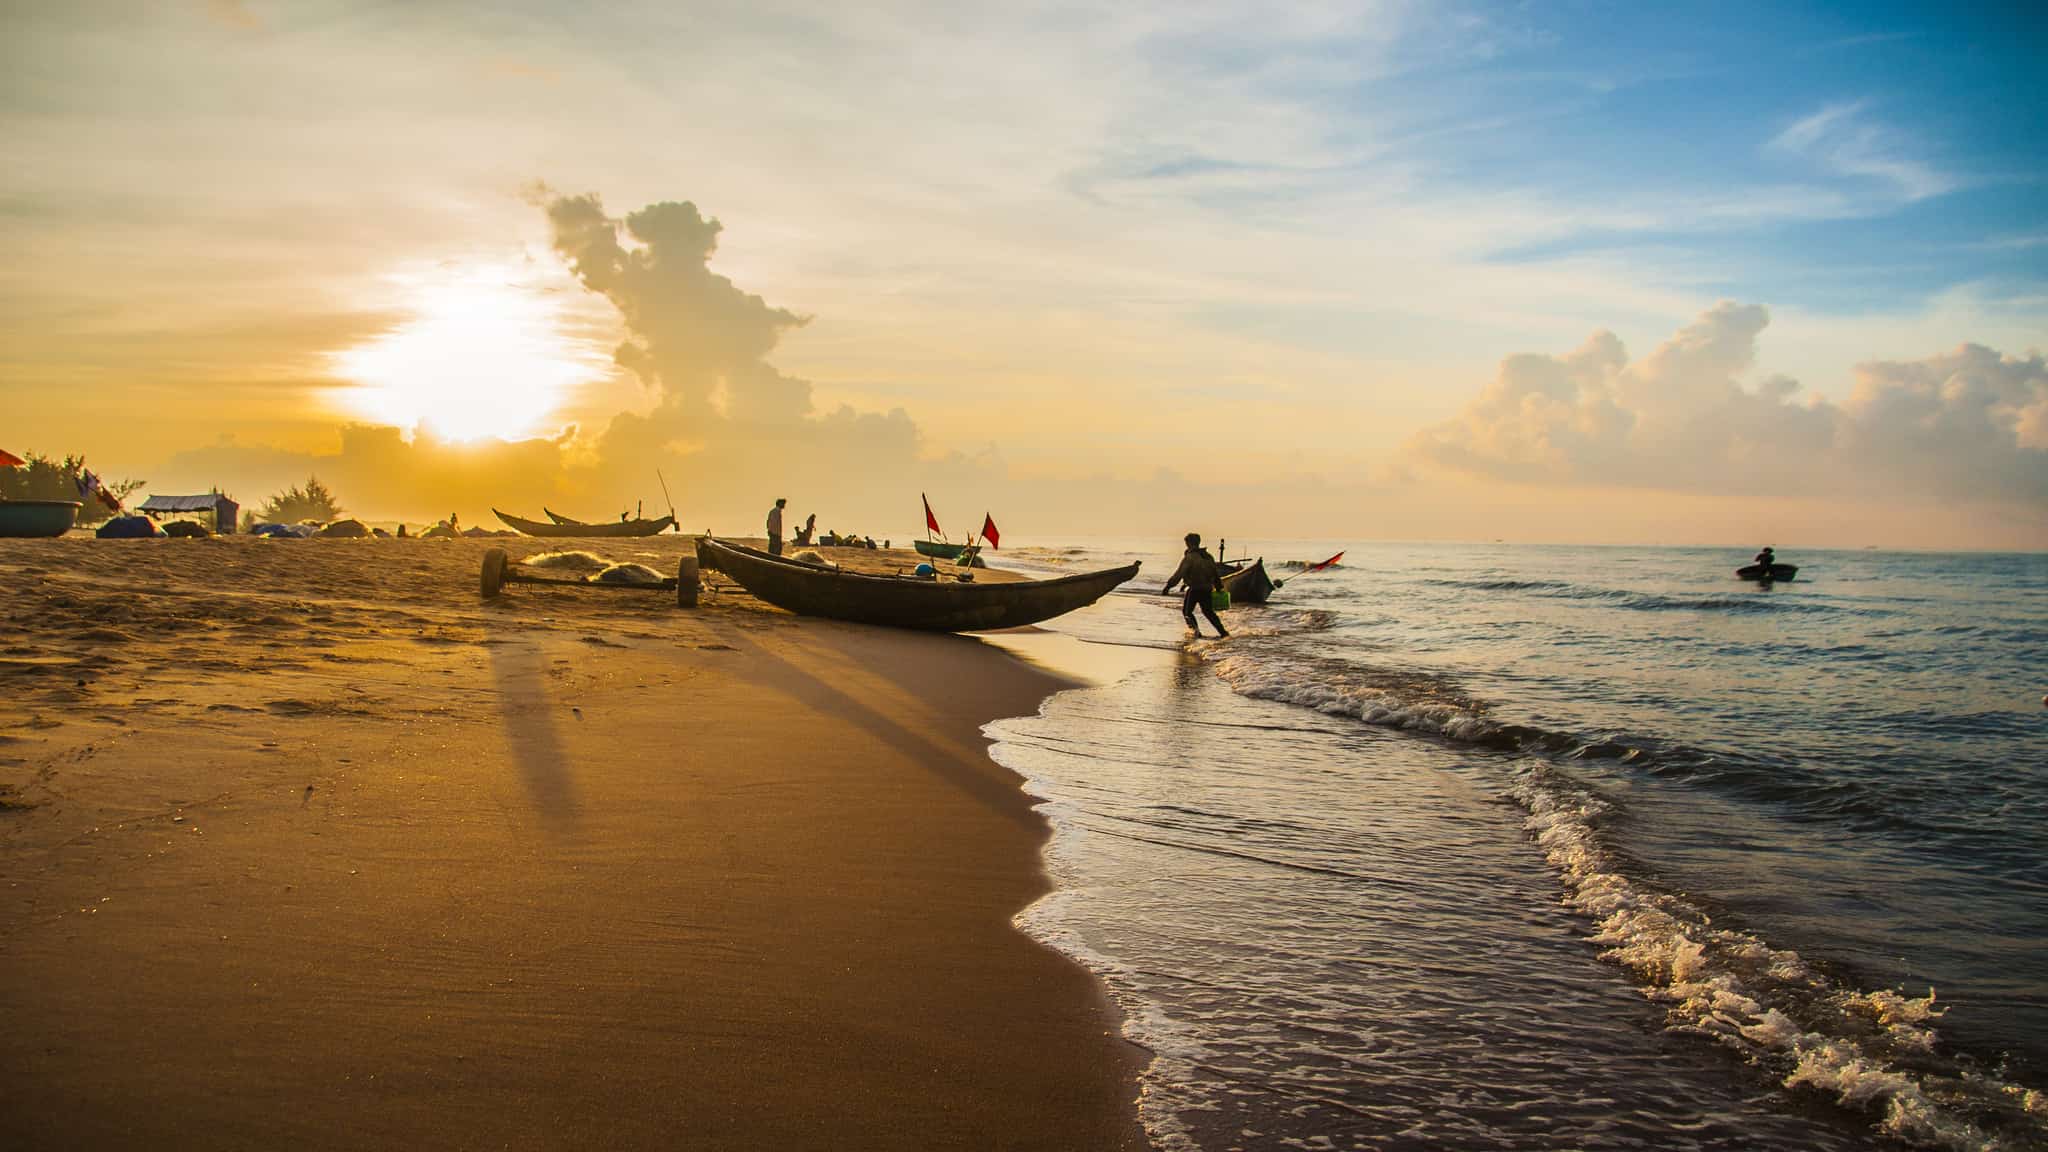 10 Bãi Biển Đẹp Nhất Việt Nam Theo Bình Chọn Của Tạp Chí Forbes